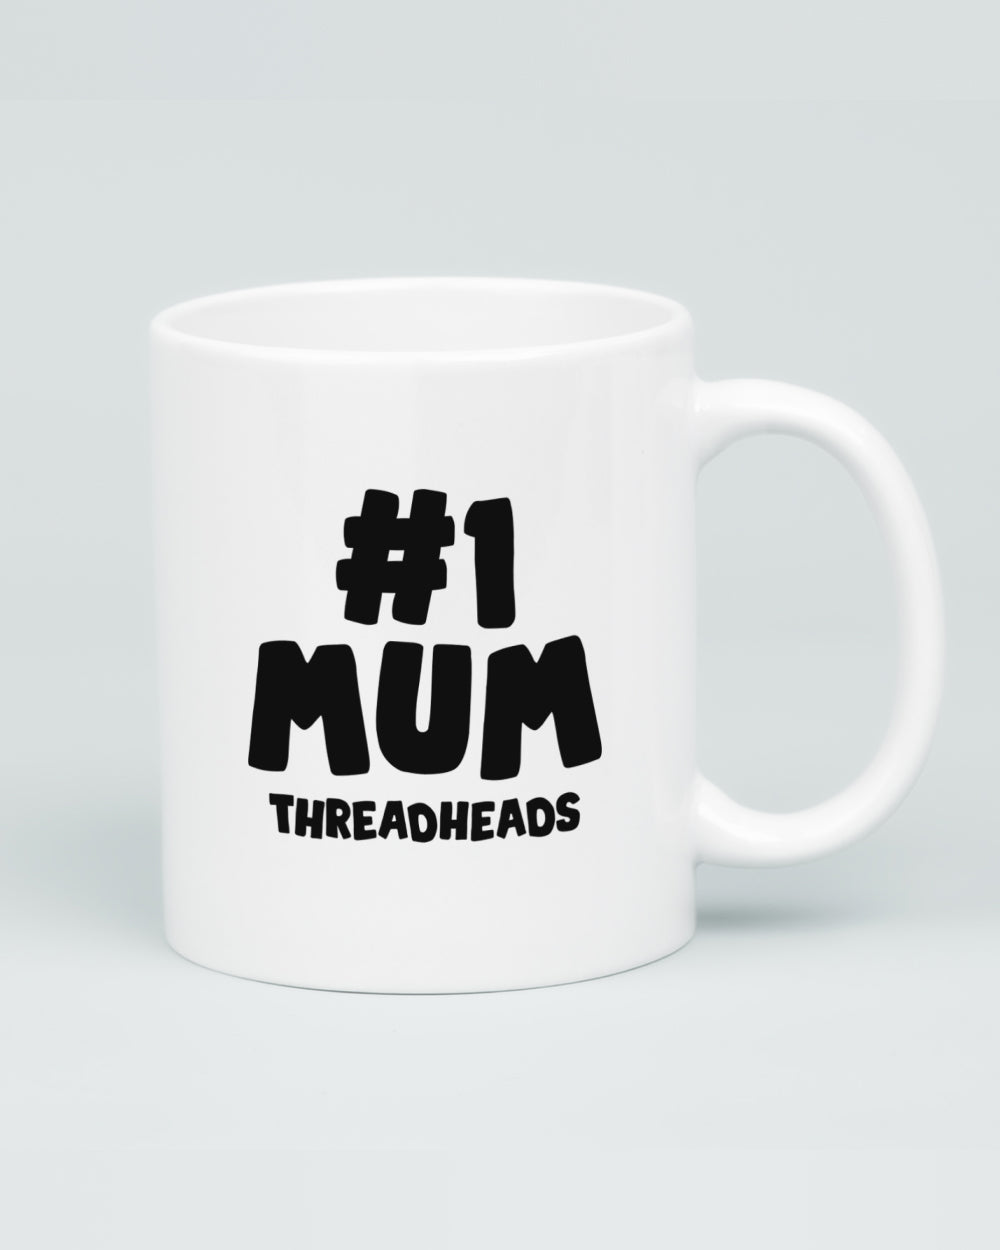 Mums, They're Like Dads But Better Mug | Threadheads